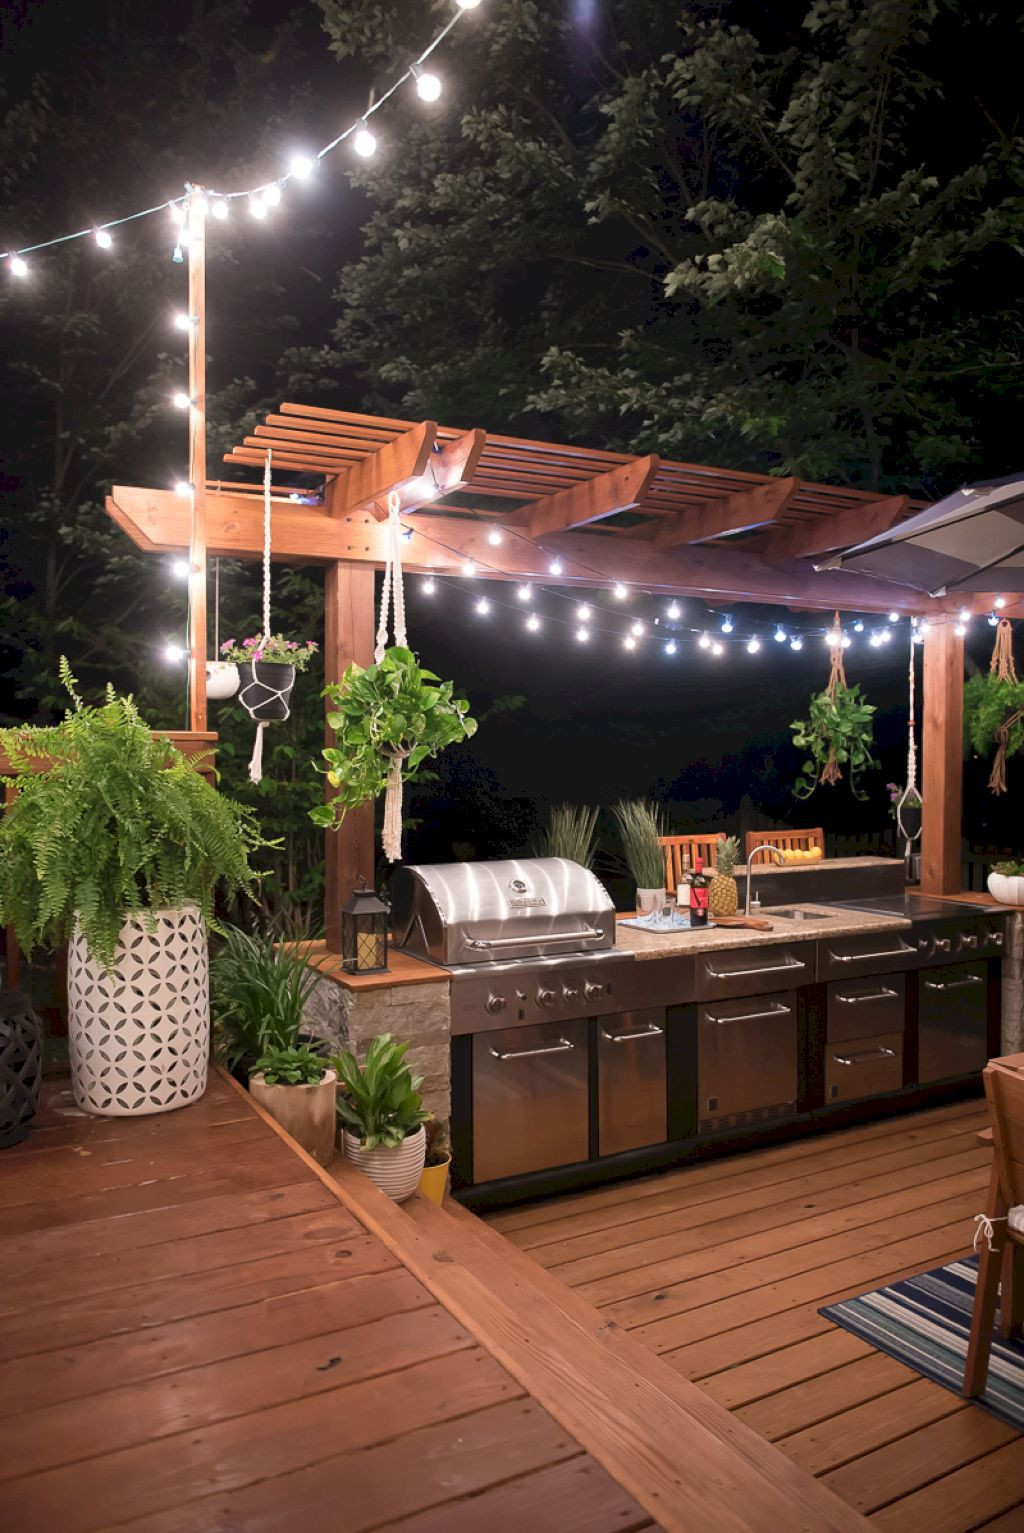 Outdoor Kitchen Patio Designs
 30 Best Outdoor Kitchen Design Ideas